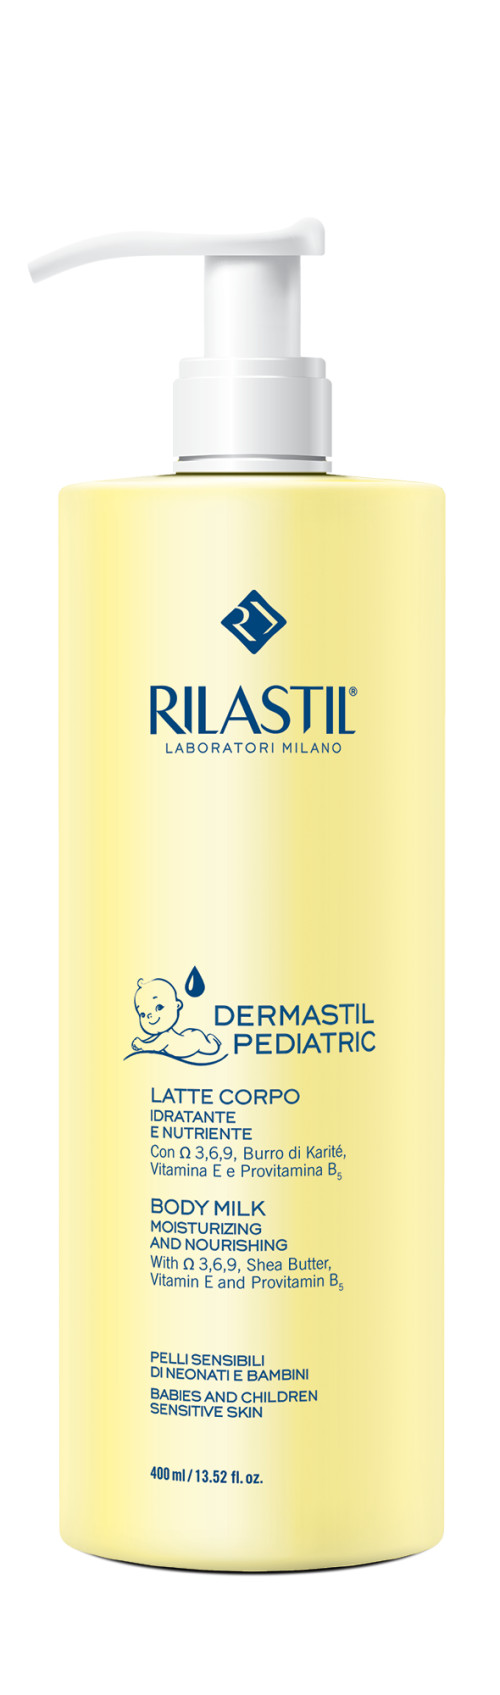 939147005 - Rilastil Dermastil Pediatric Latte Corpo 400ml - 4702360_2.jpg